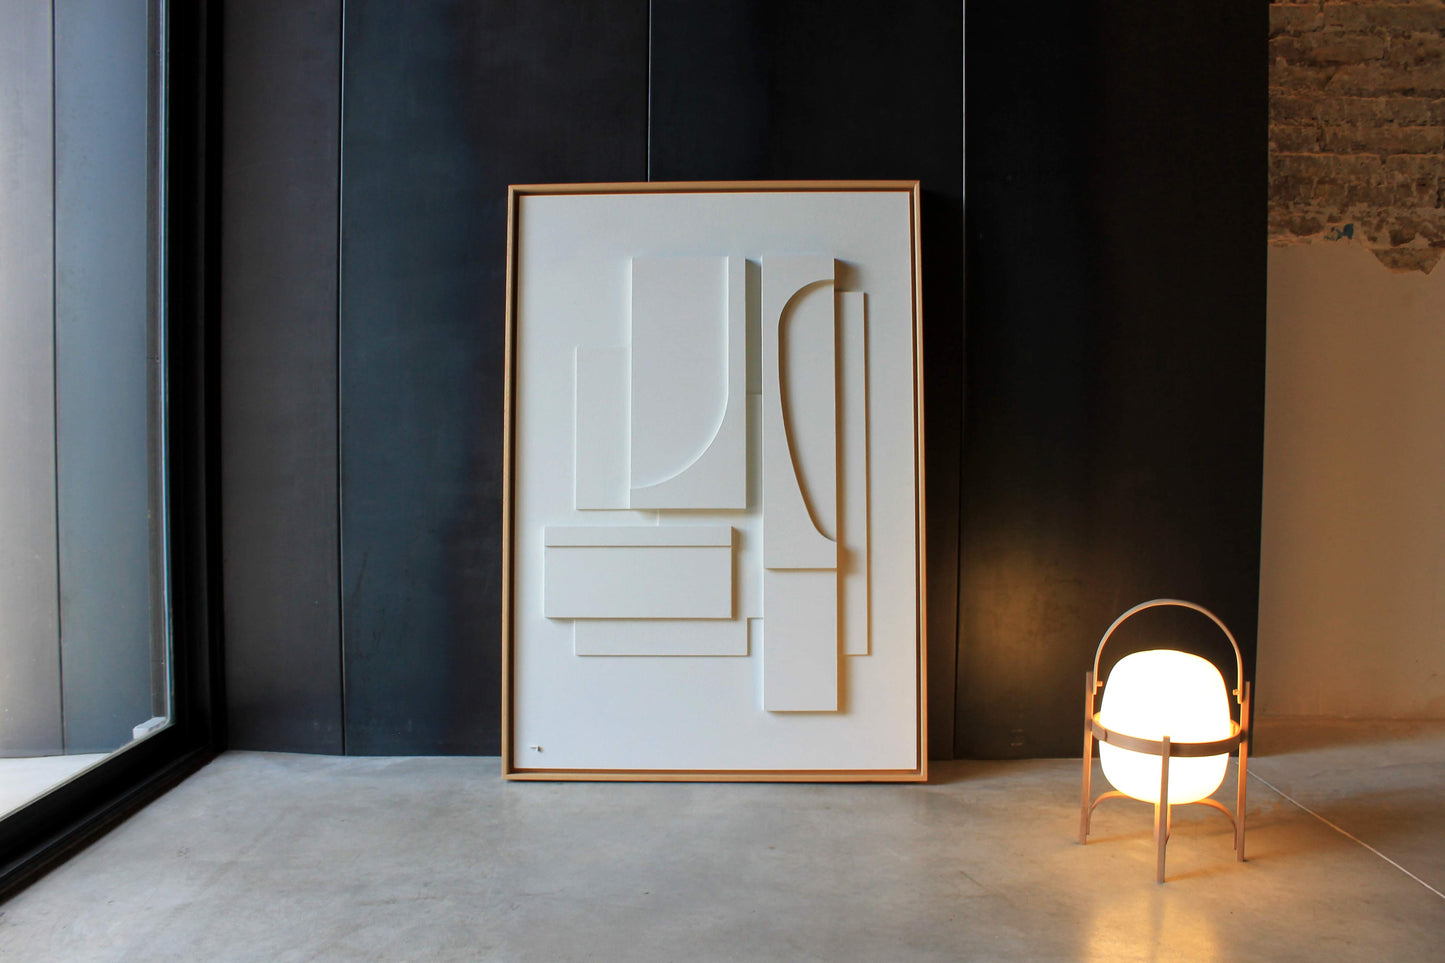 Cuadro blanco grande enmarcado en madera natural. Aparece sobre un fondo negro en una casa moderna de estilo minimalista.